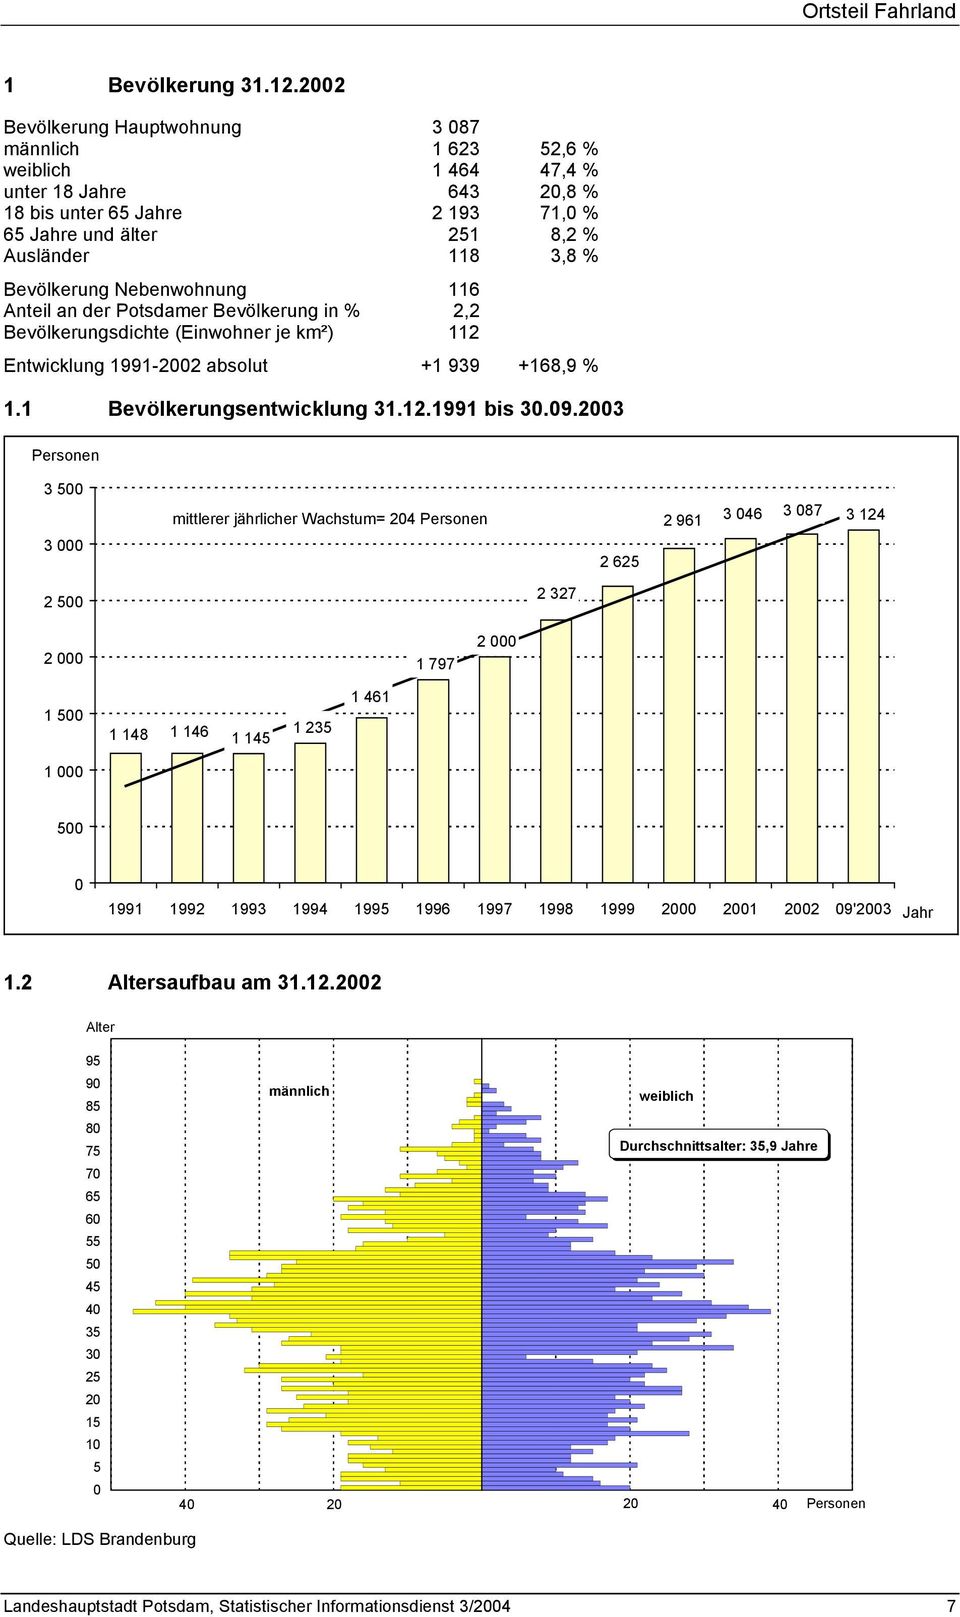 Bevölkerung Nebenwohnung 116 Anteil an der Potsdamer Bevölkerung in % 2,2 Bevölkerungsdichte (Einwohner je km²) 112 Entwicklung 1991-2002 absolut +1 939 +168,9 % 1.1 Bevölkerungsentwicklung 31.12.1991 bis 30.